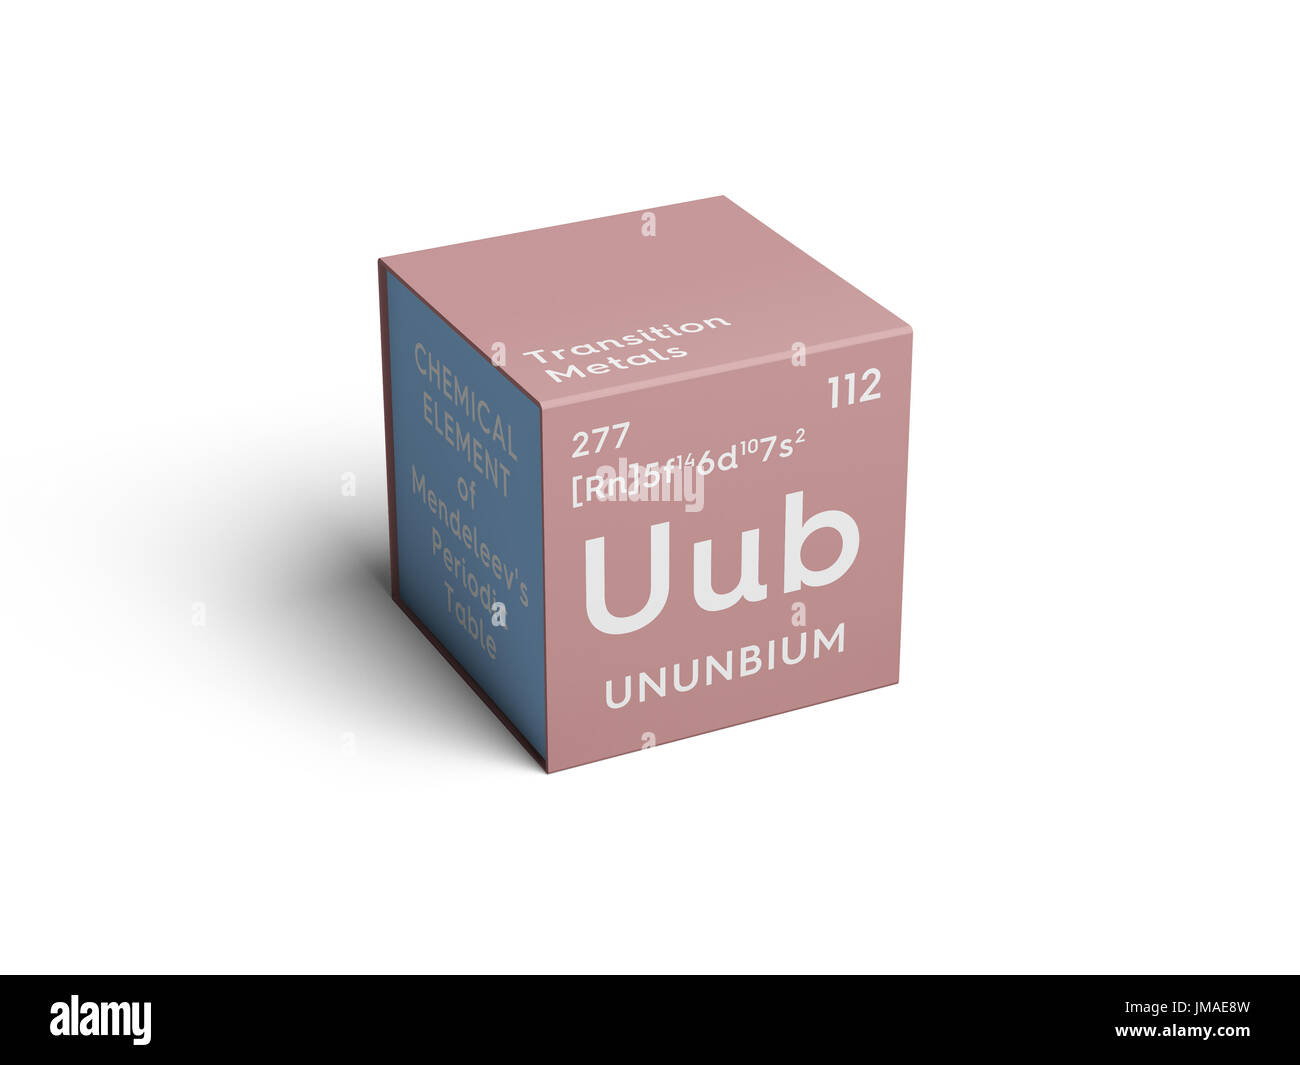 Ununbium. Transition metals. Chemical Element of Mendeleev's Periodic Table. Ununbium in square cube creative concept. Stock Photo